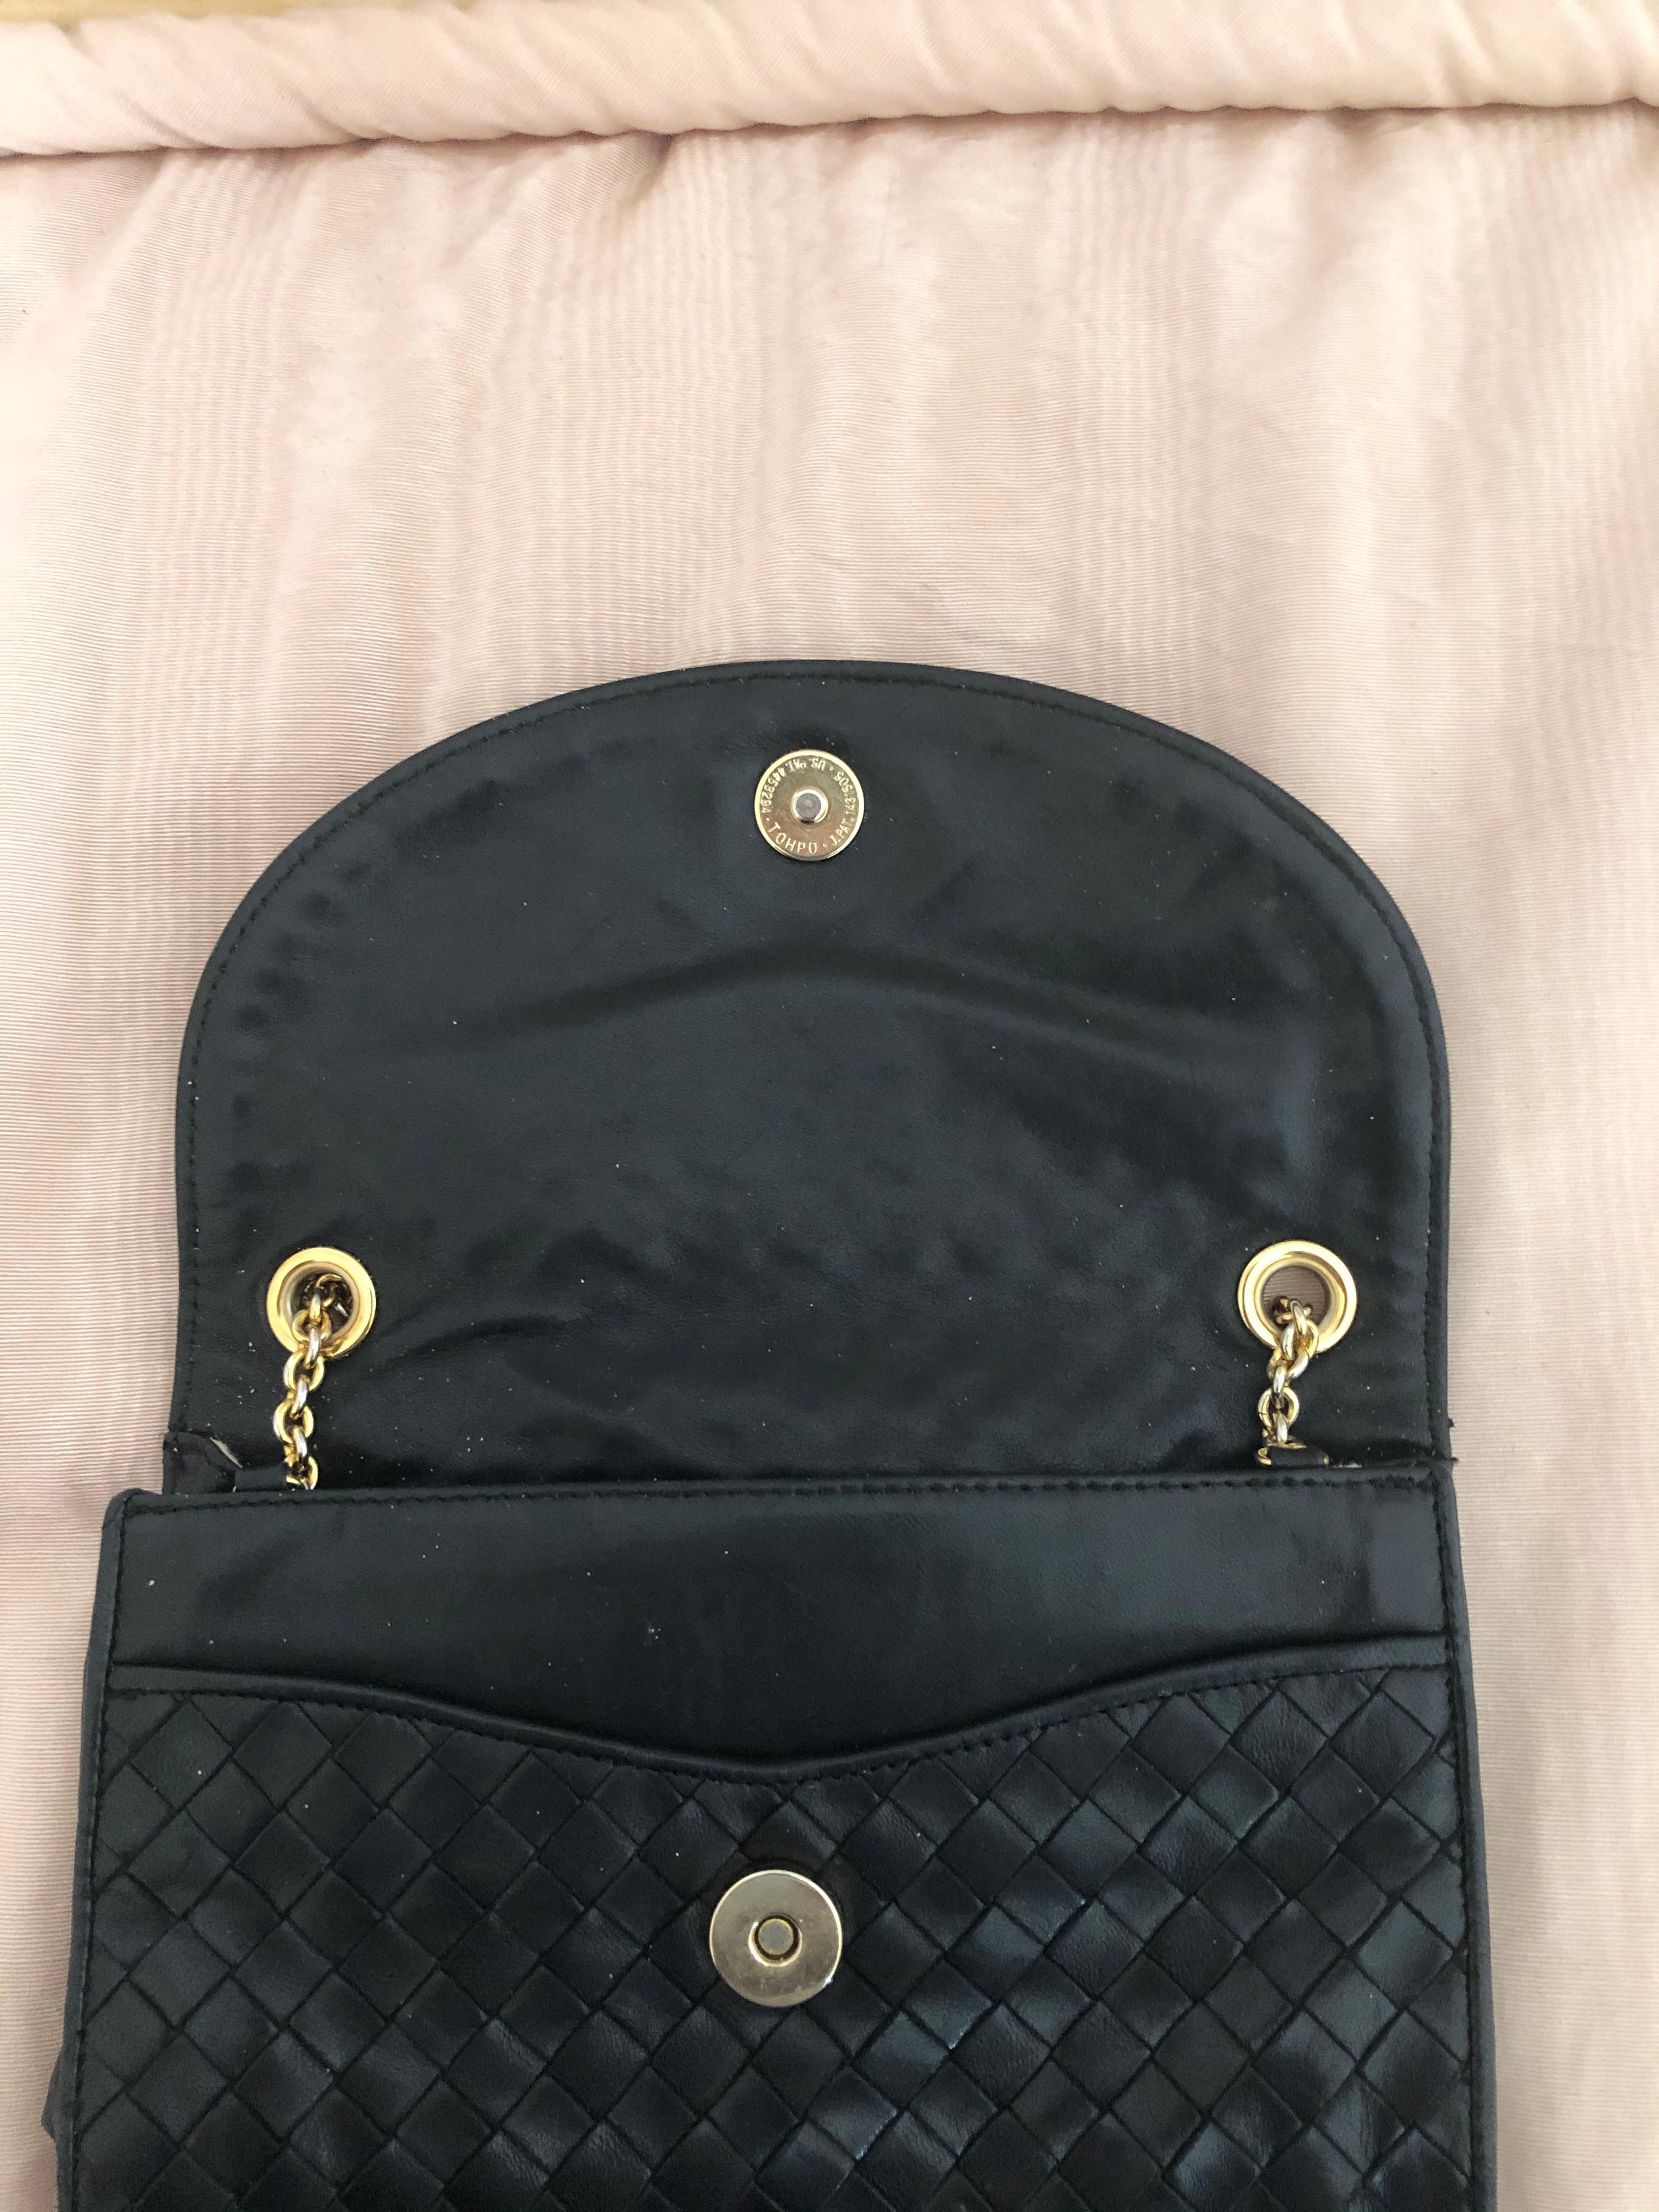 Women's Vintage Bottega Veneta Black Intrecciato Handbag with Chain Strap